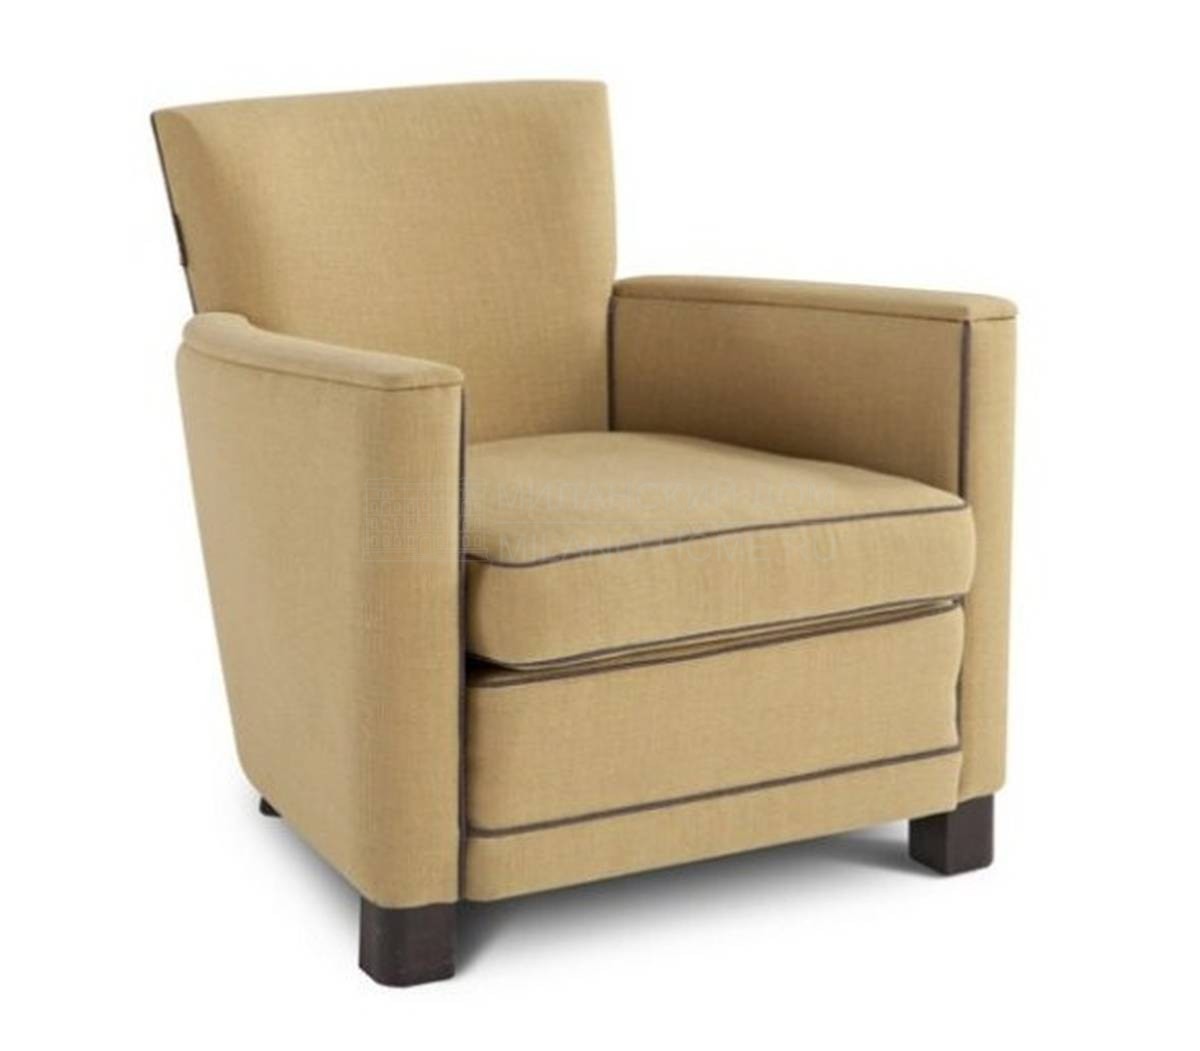 Кресло Zeste armchair из Франции фабрики ROCHE BOBOIS